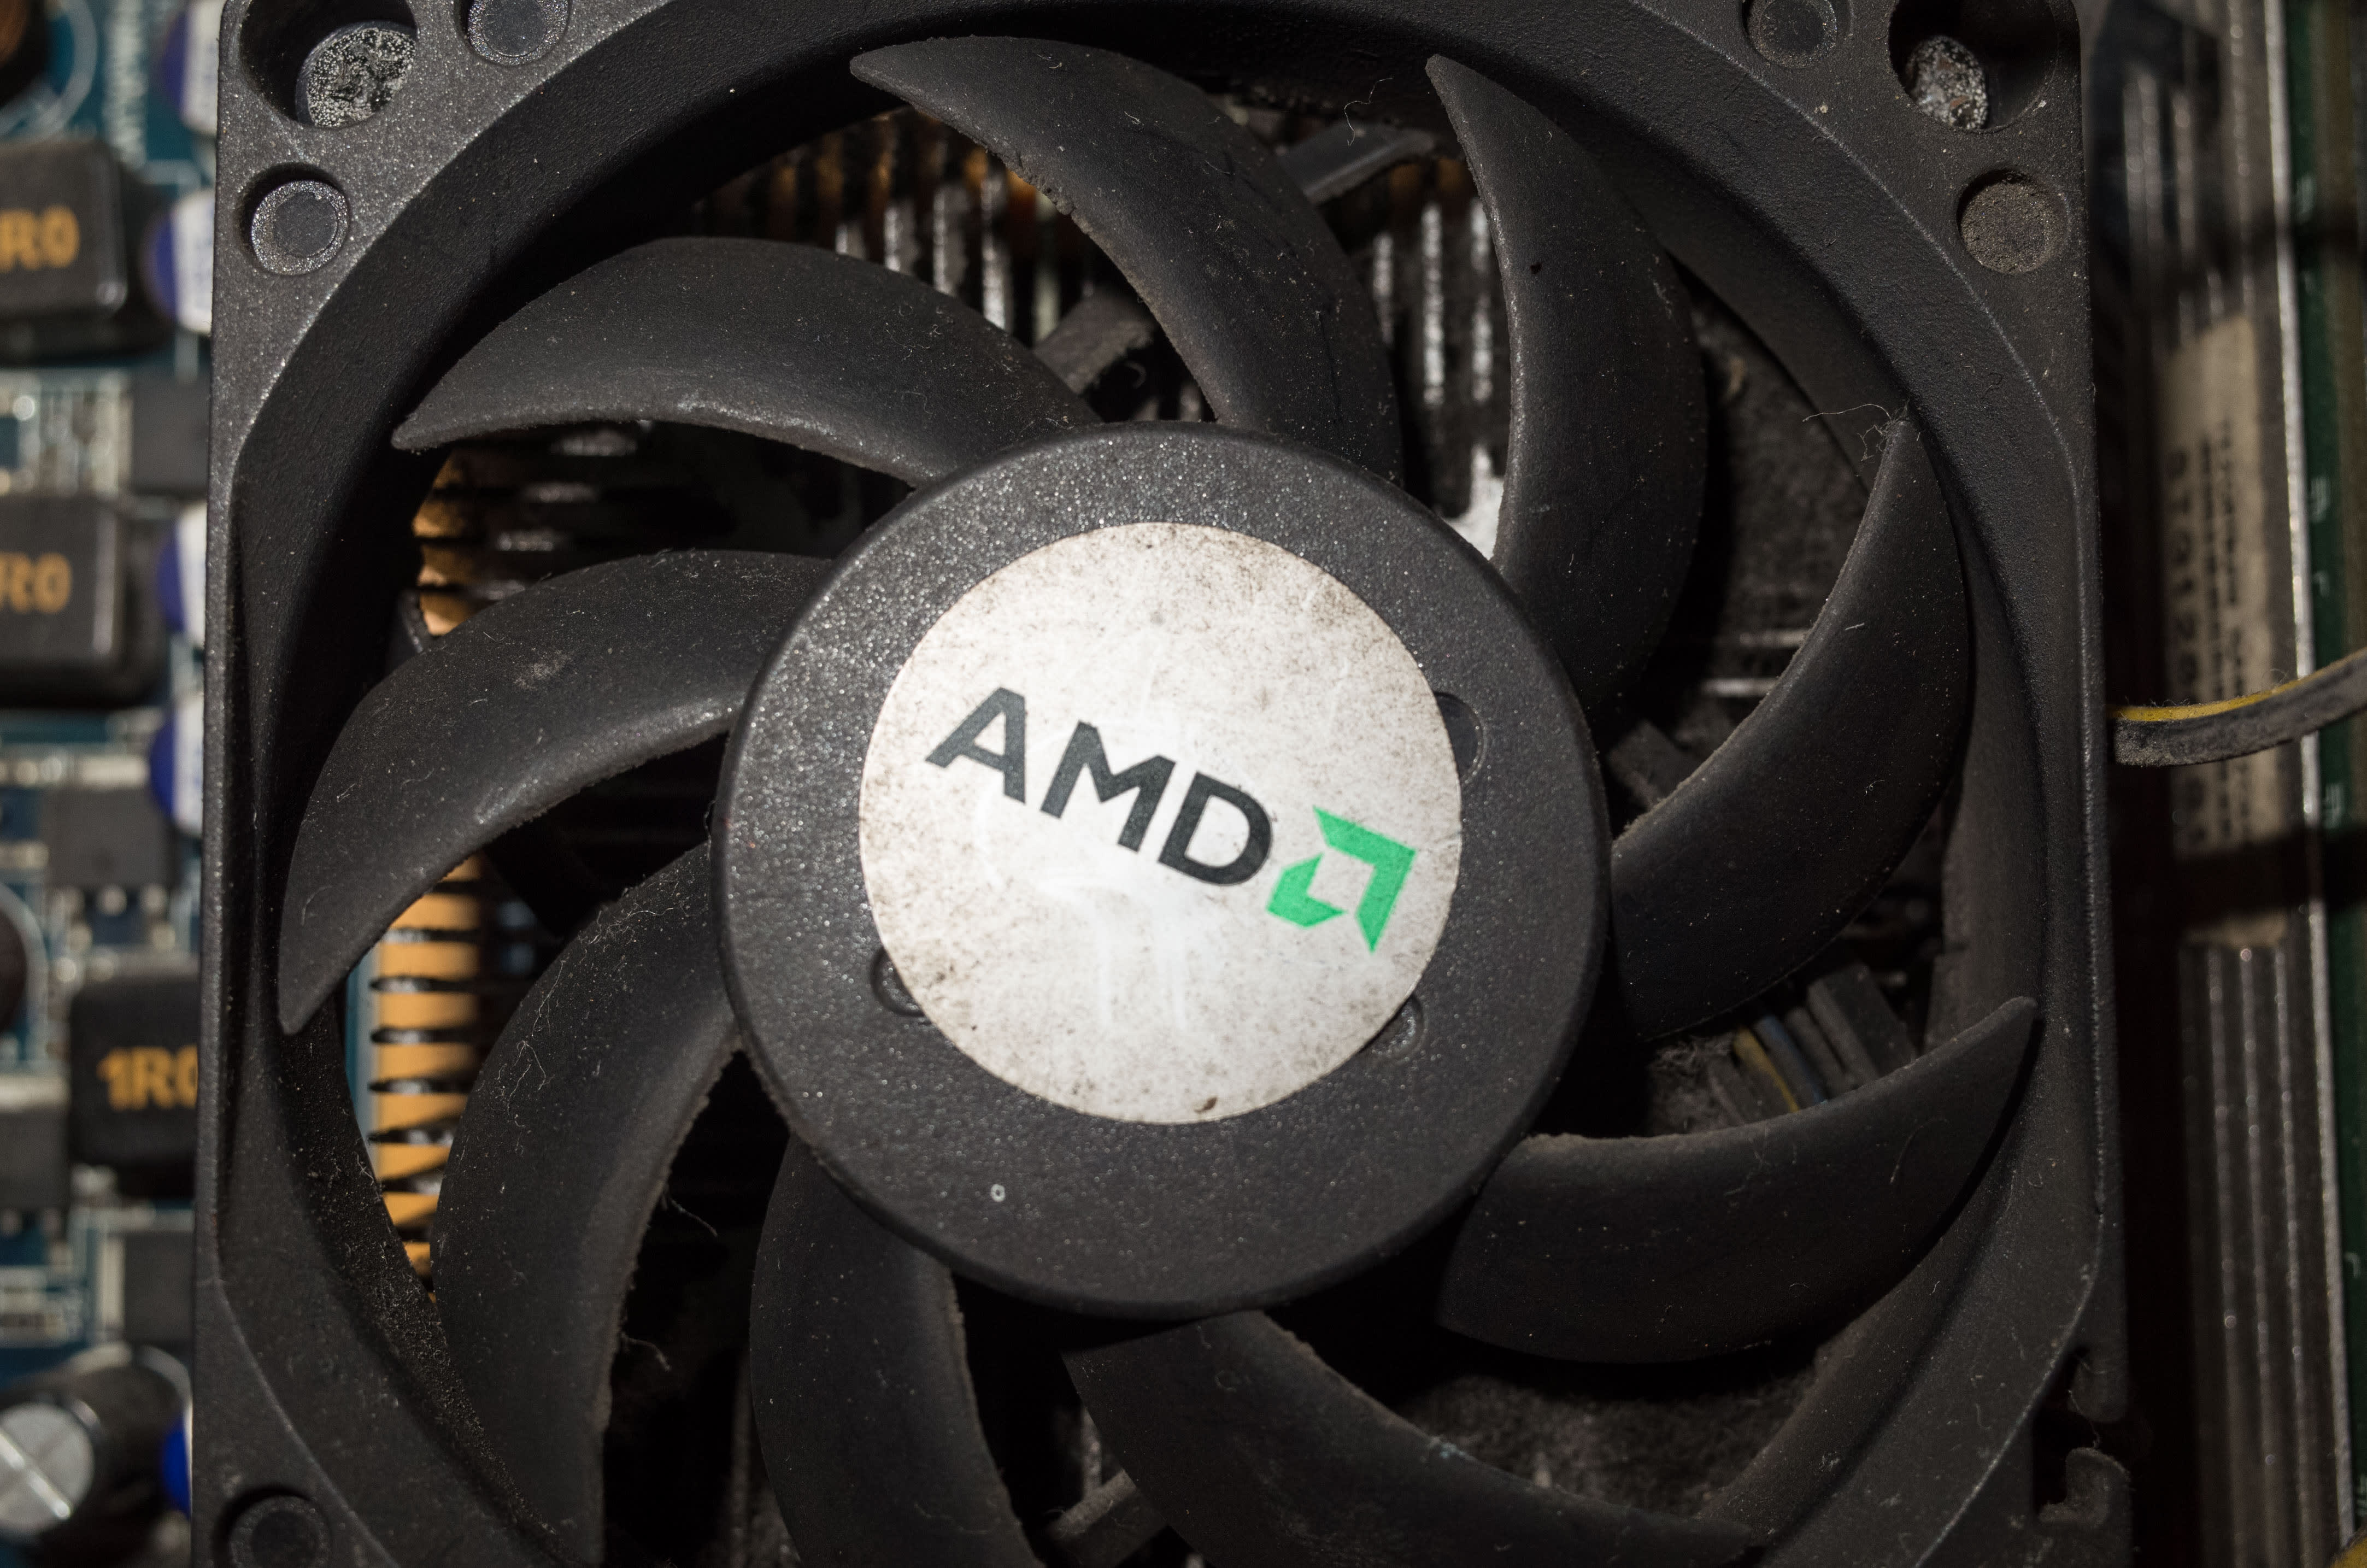 AMD peut surfer sur la vague de l'IA pour prendre une plus grande part de marché à ses rivaux, selon Bank of America